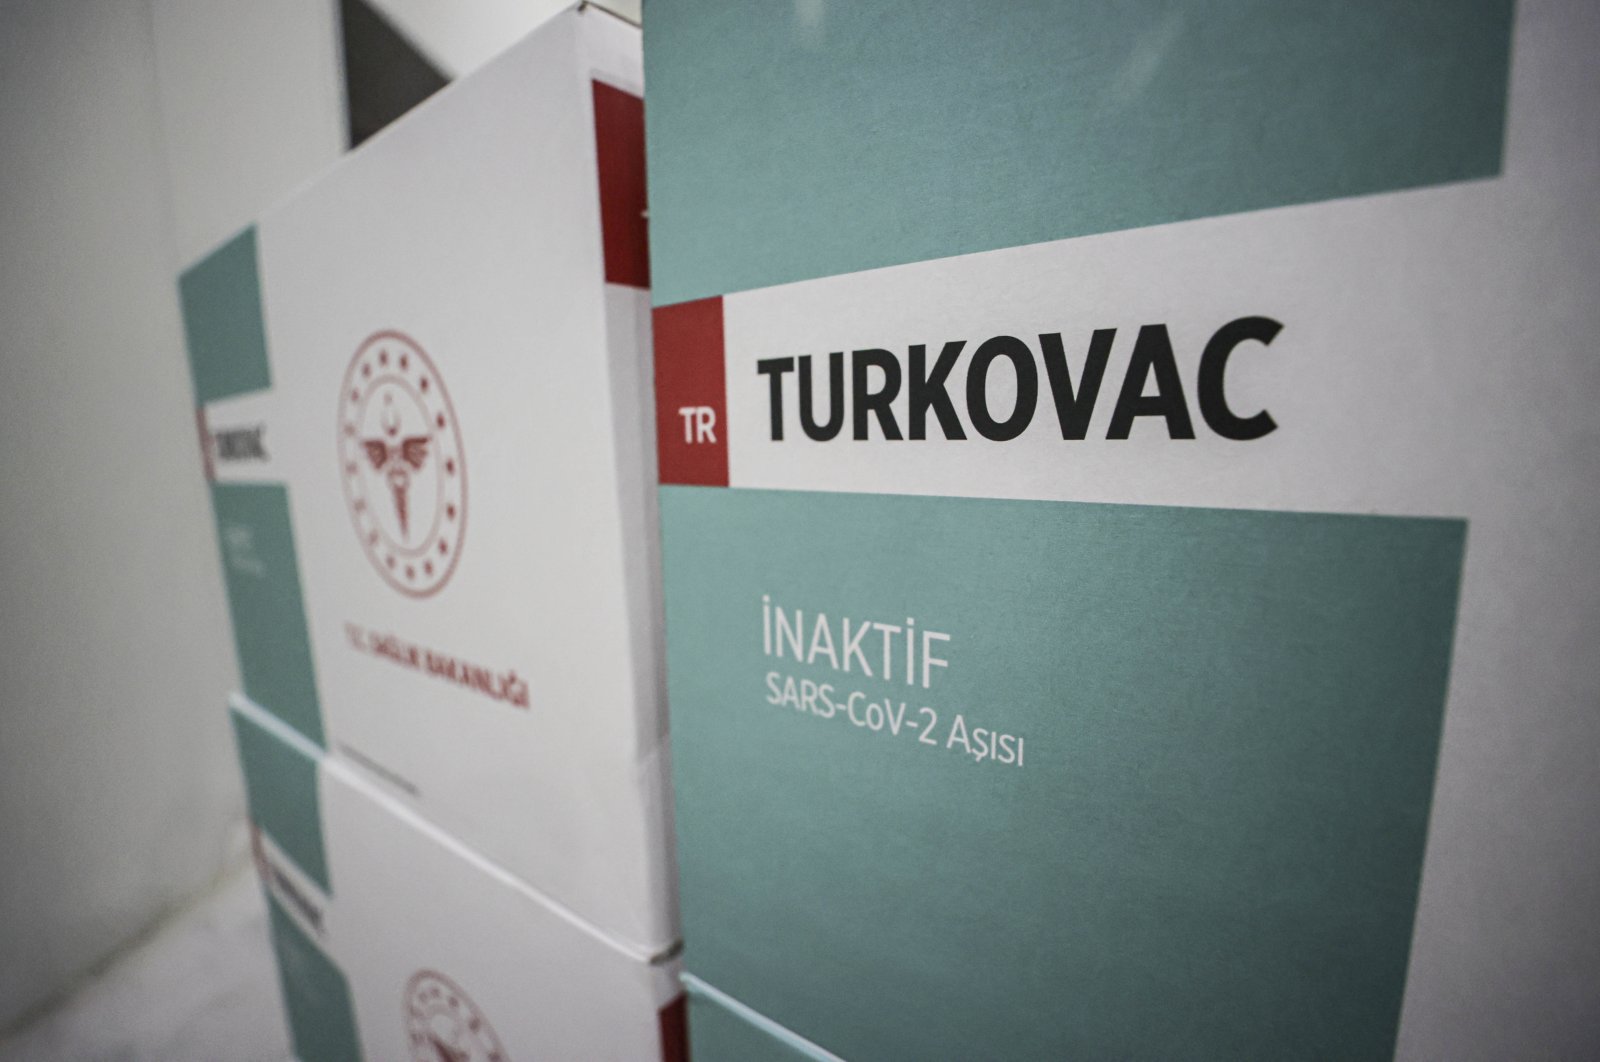 TURKOVAC untuk menghilangkan keraguan vaksin COVID-19 di Turki